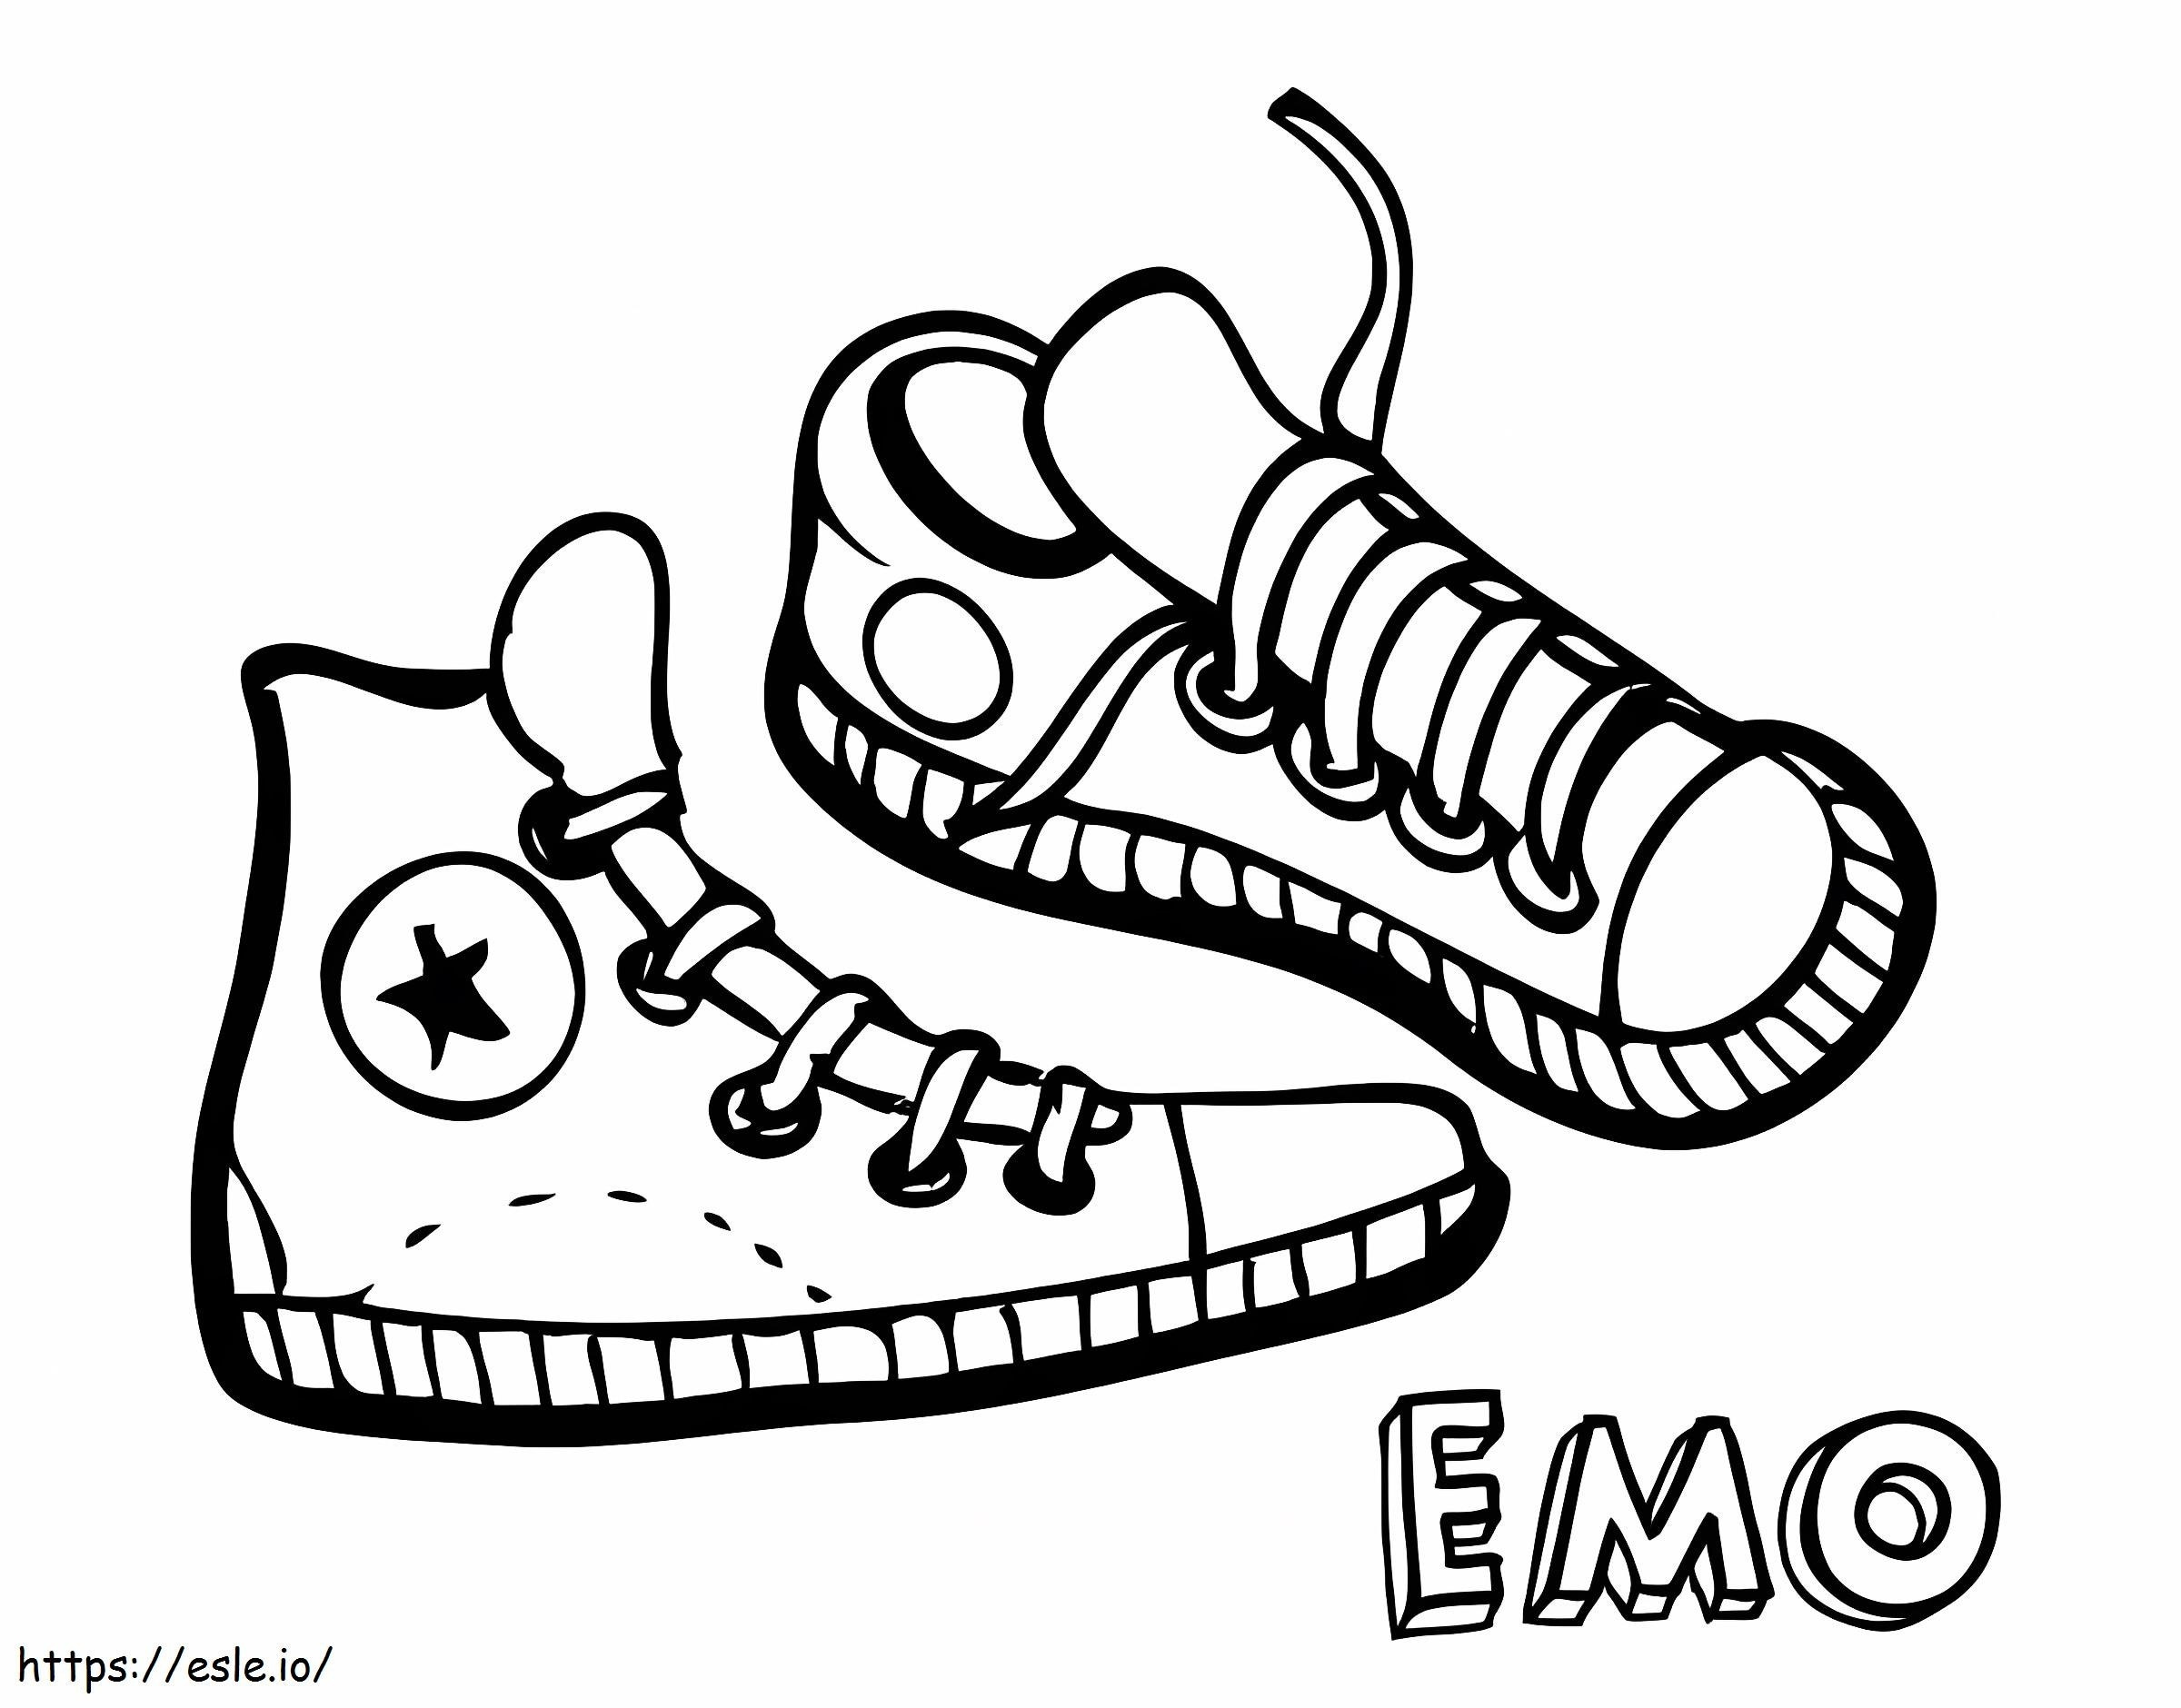 Emo Sneakers kifestő